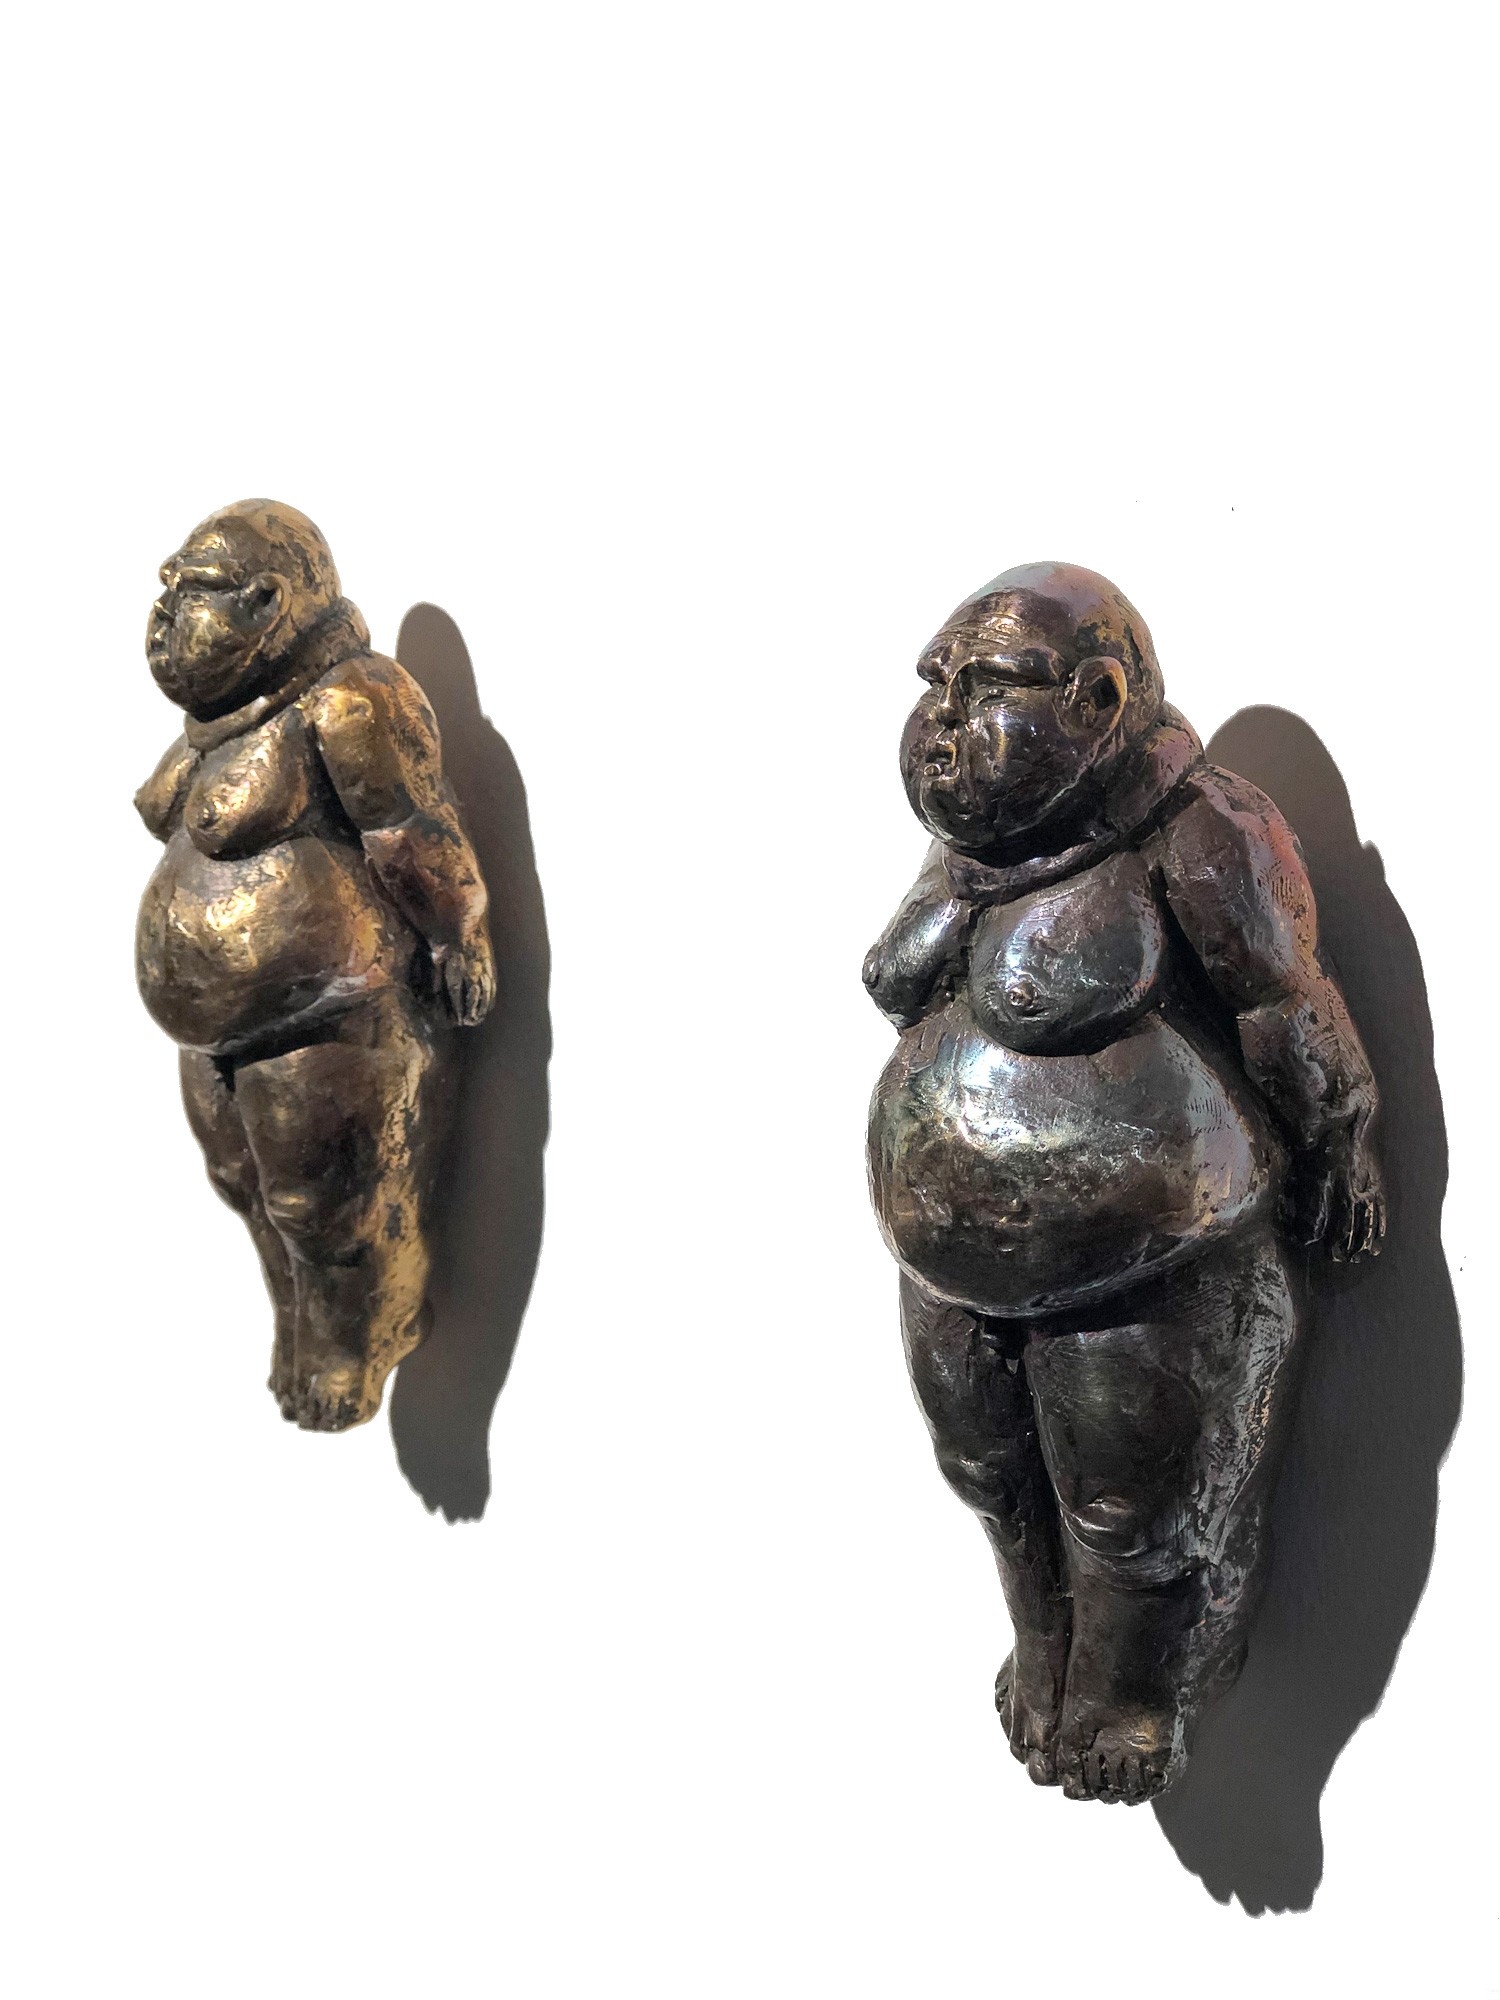 Die Made - Bronze, Skulptur von Tim David Trillsam, 2 Editionsexemplare